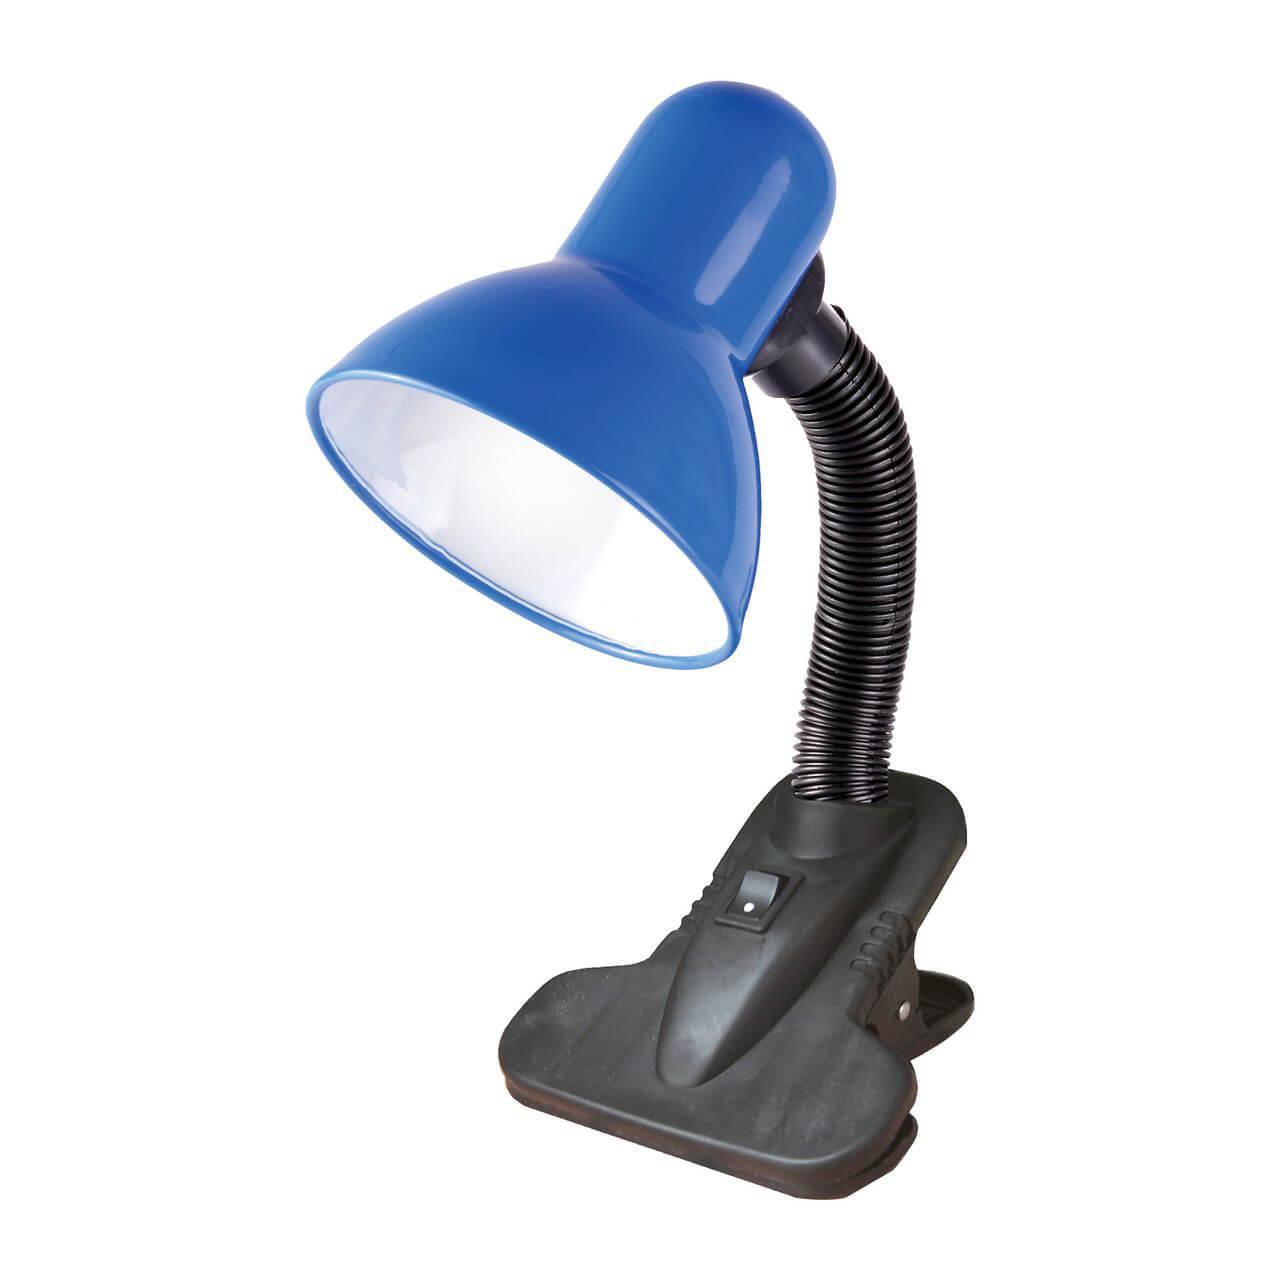 Настольная лампа Uniel TLI-206 Blue E27 02462 настольная лампа uniel tli 202 white e27 00756